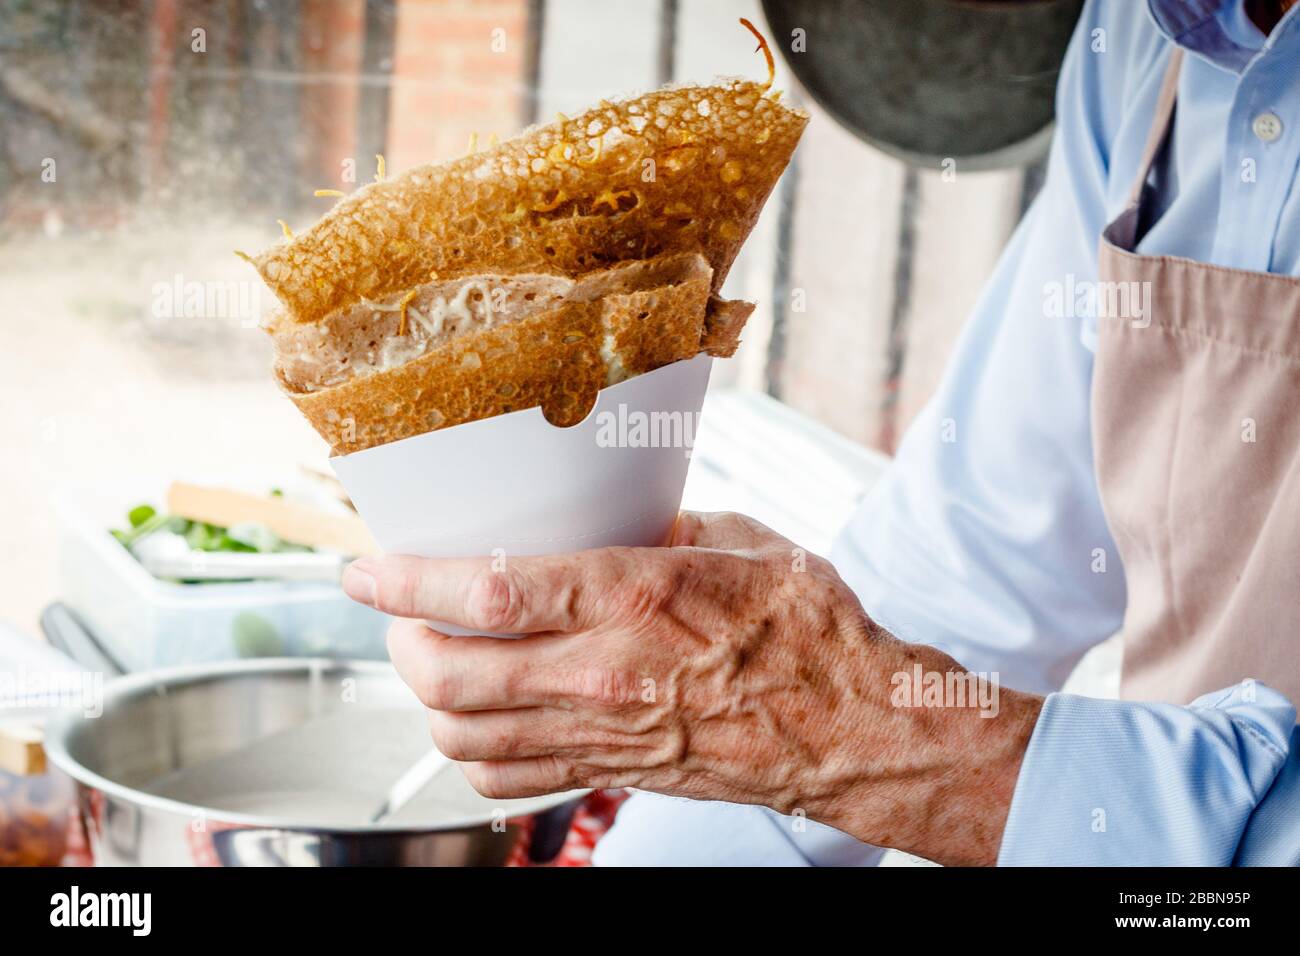 Fare crepes frittelle in un mercato alimentare. Una mano serve crepes saporite con formaggio fuso e funghi all'aperto in una stalla alimentare. Foto Stock